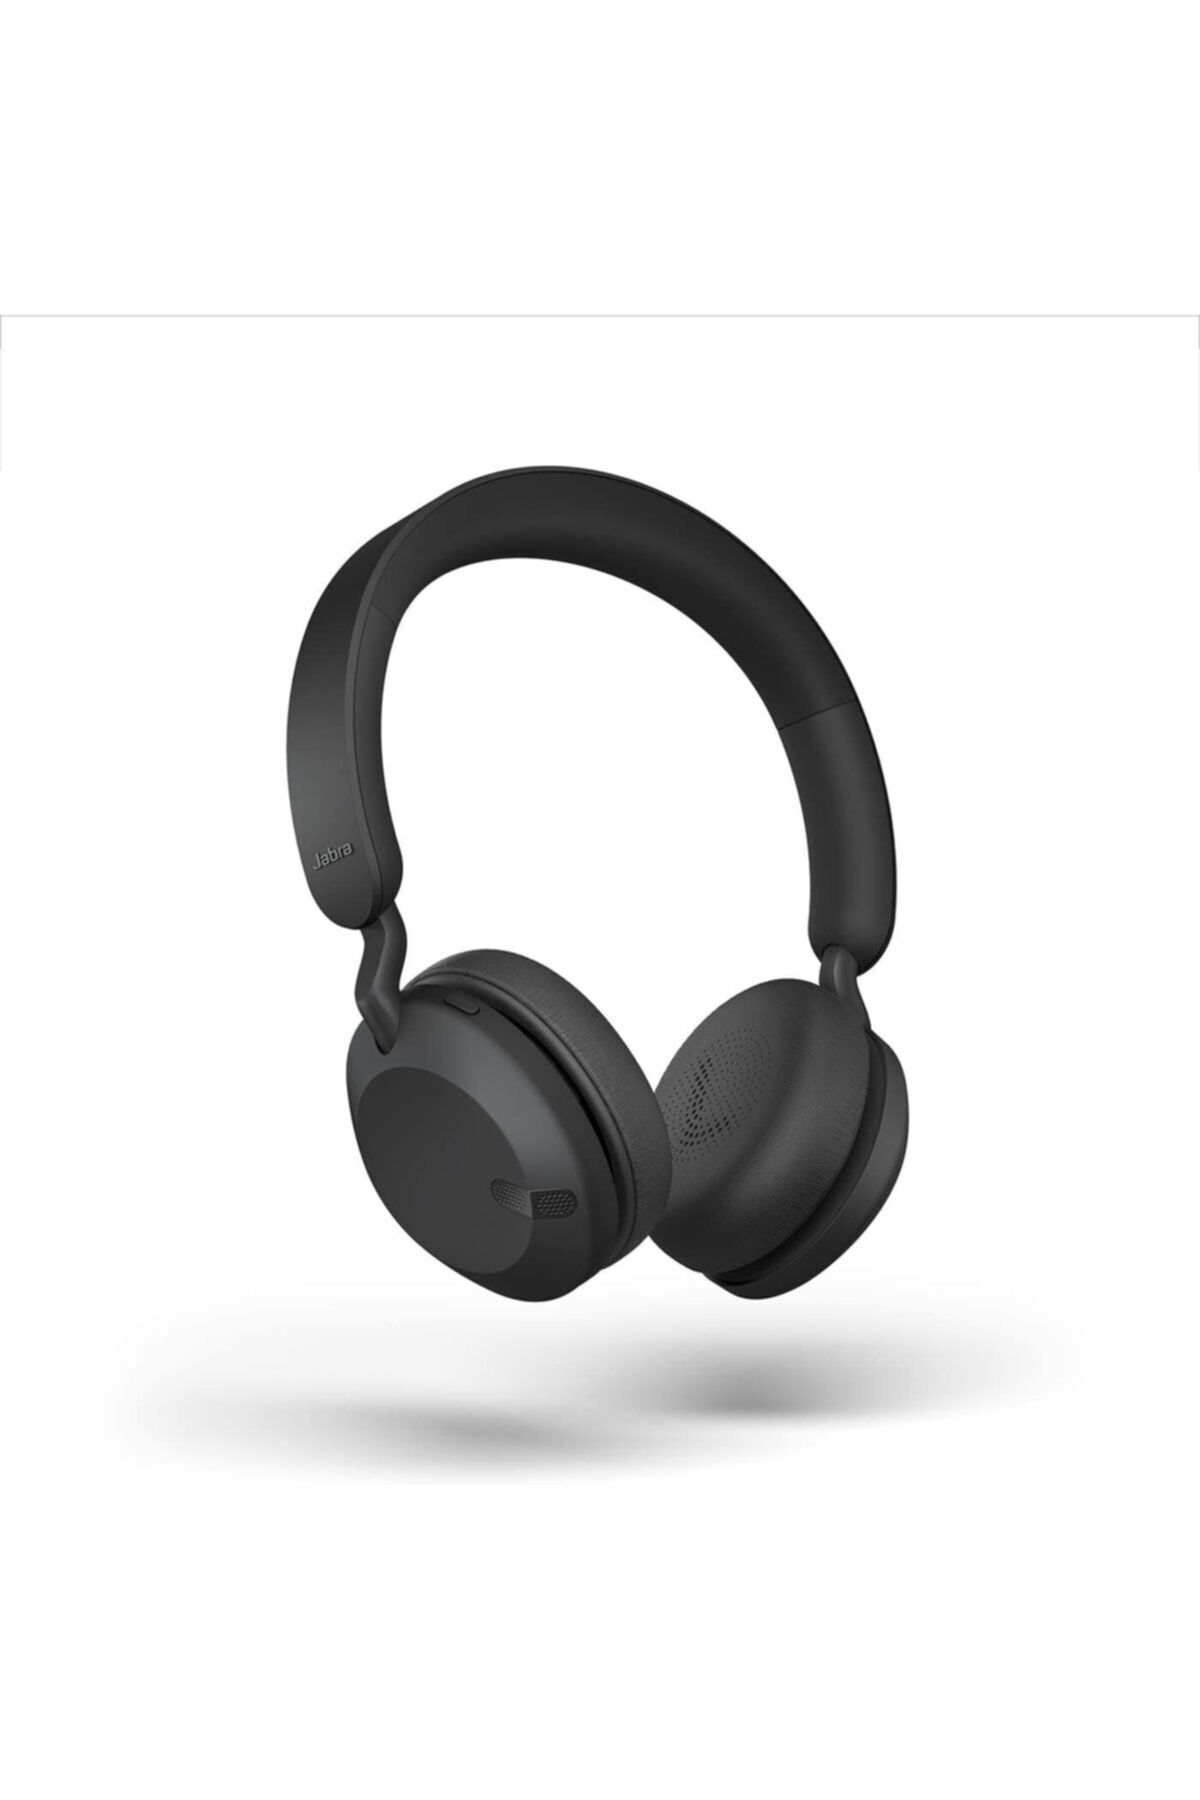 Jabra Elite 45h Kablosuz Kulaküstü Bluetooth Kulaklık Titanium Black